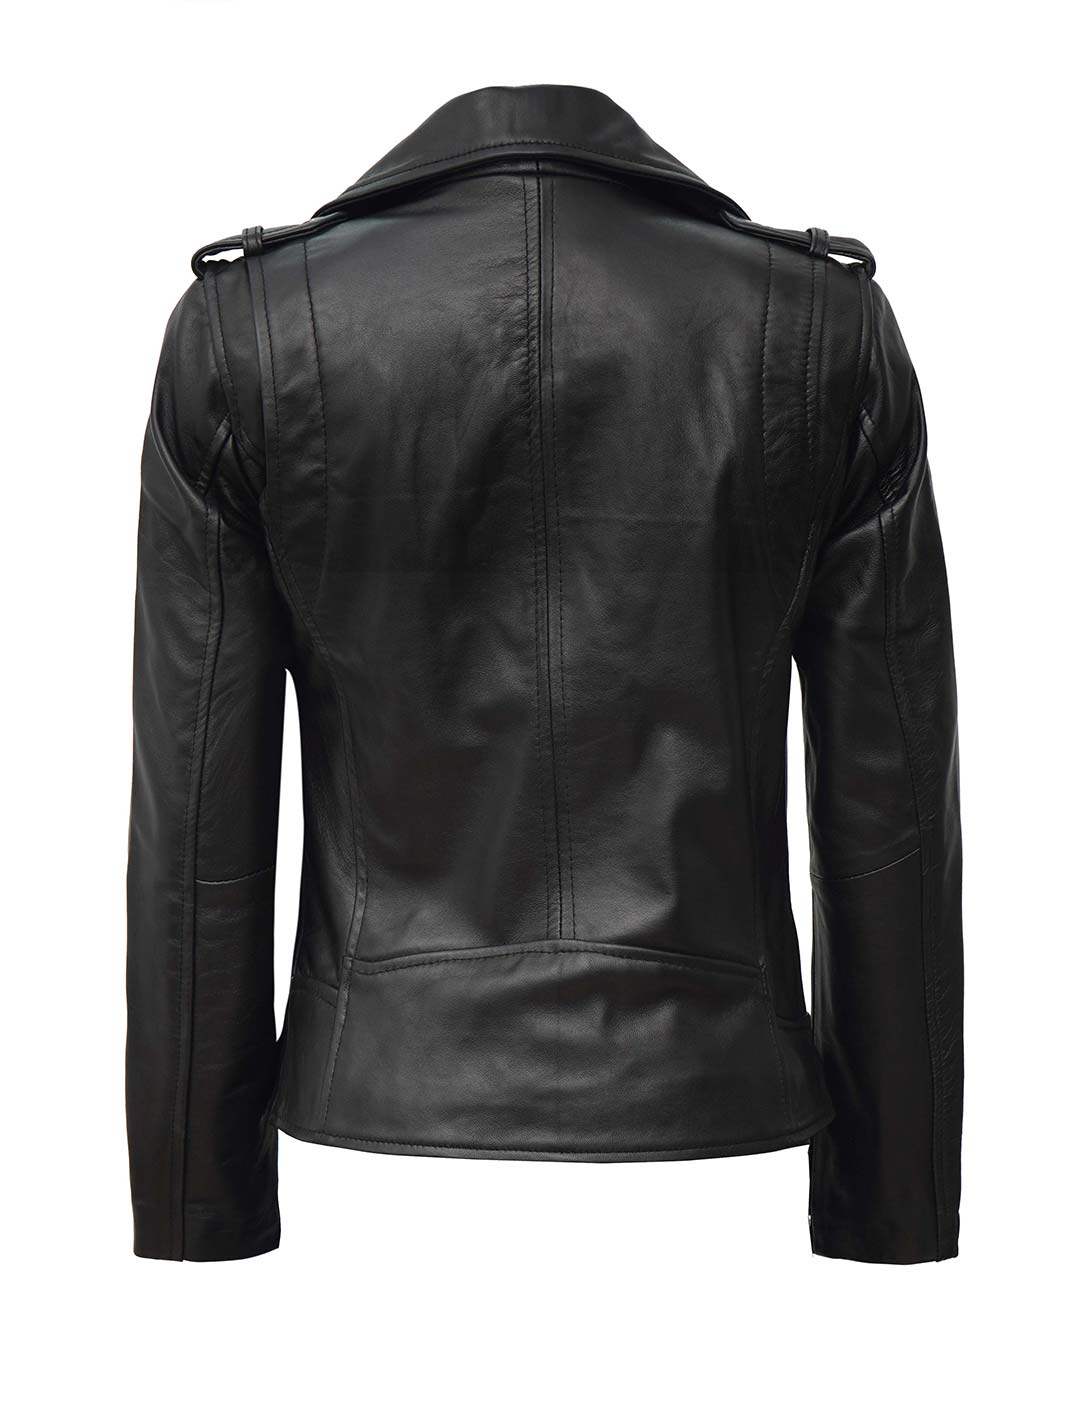 Women Biker Leather Jacket